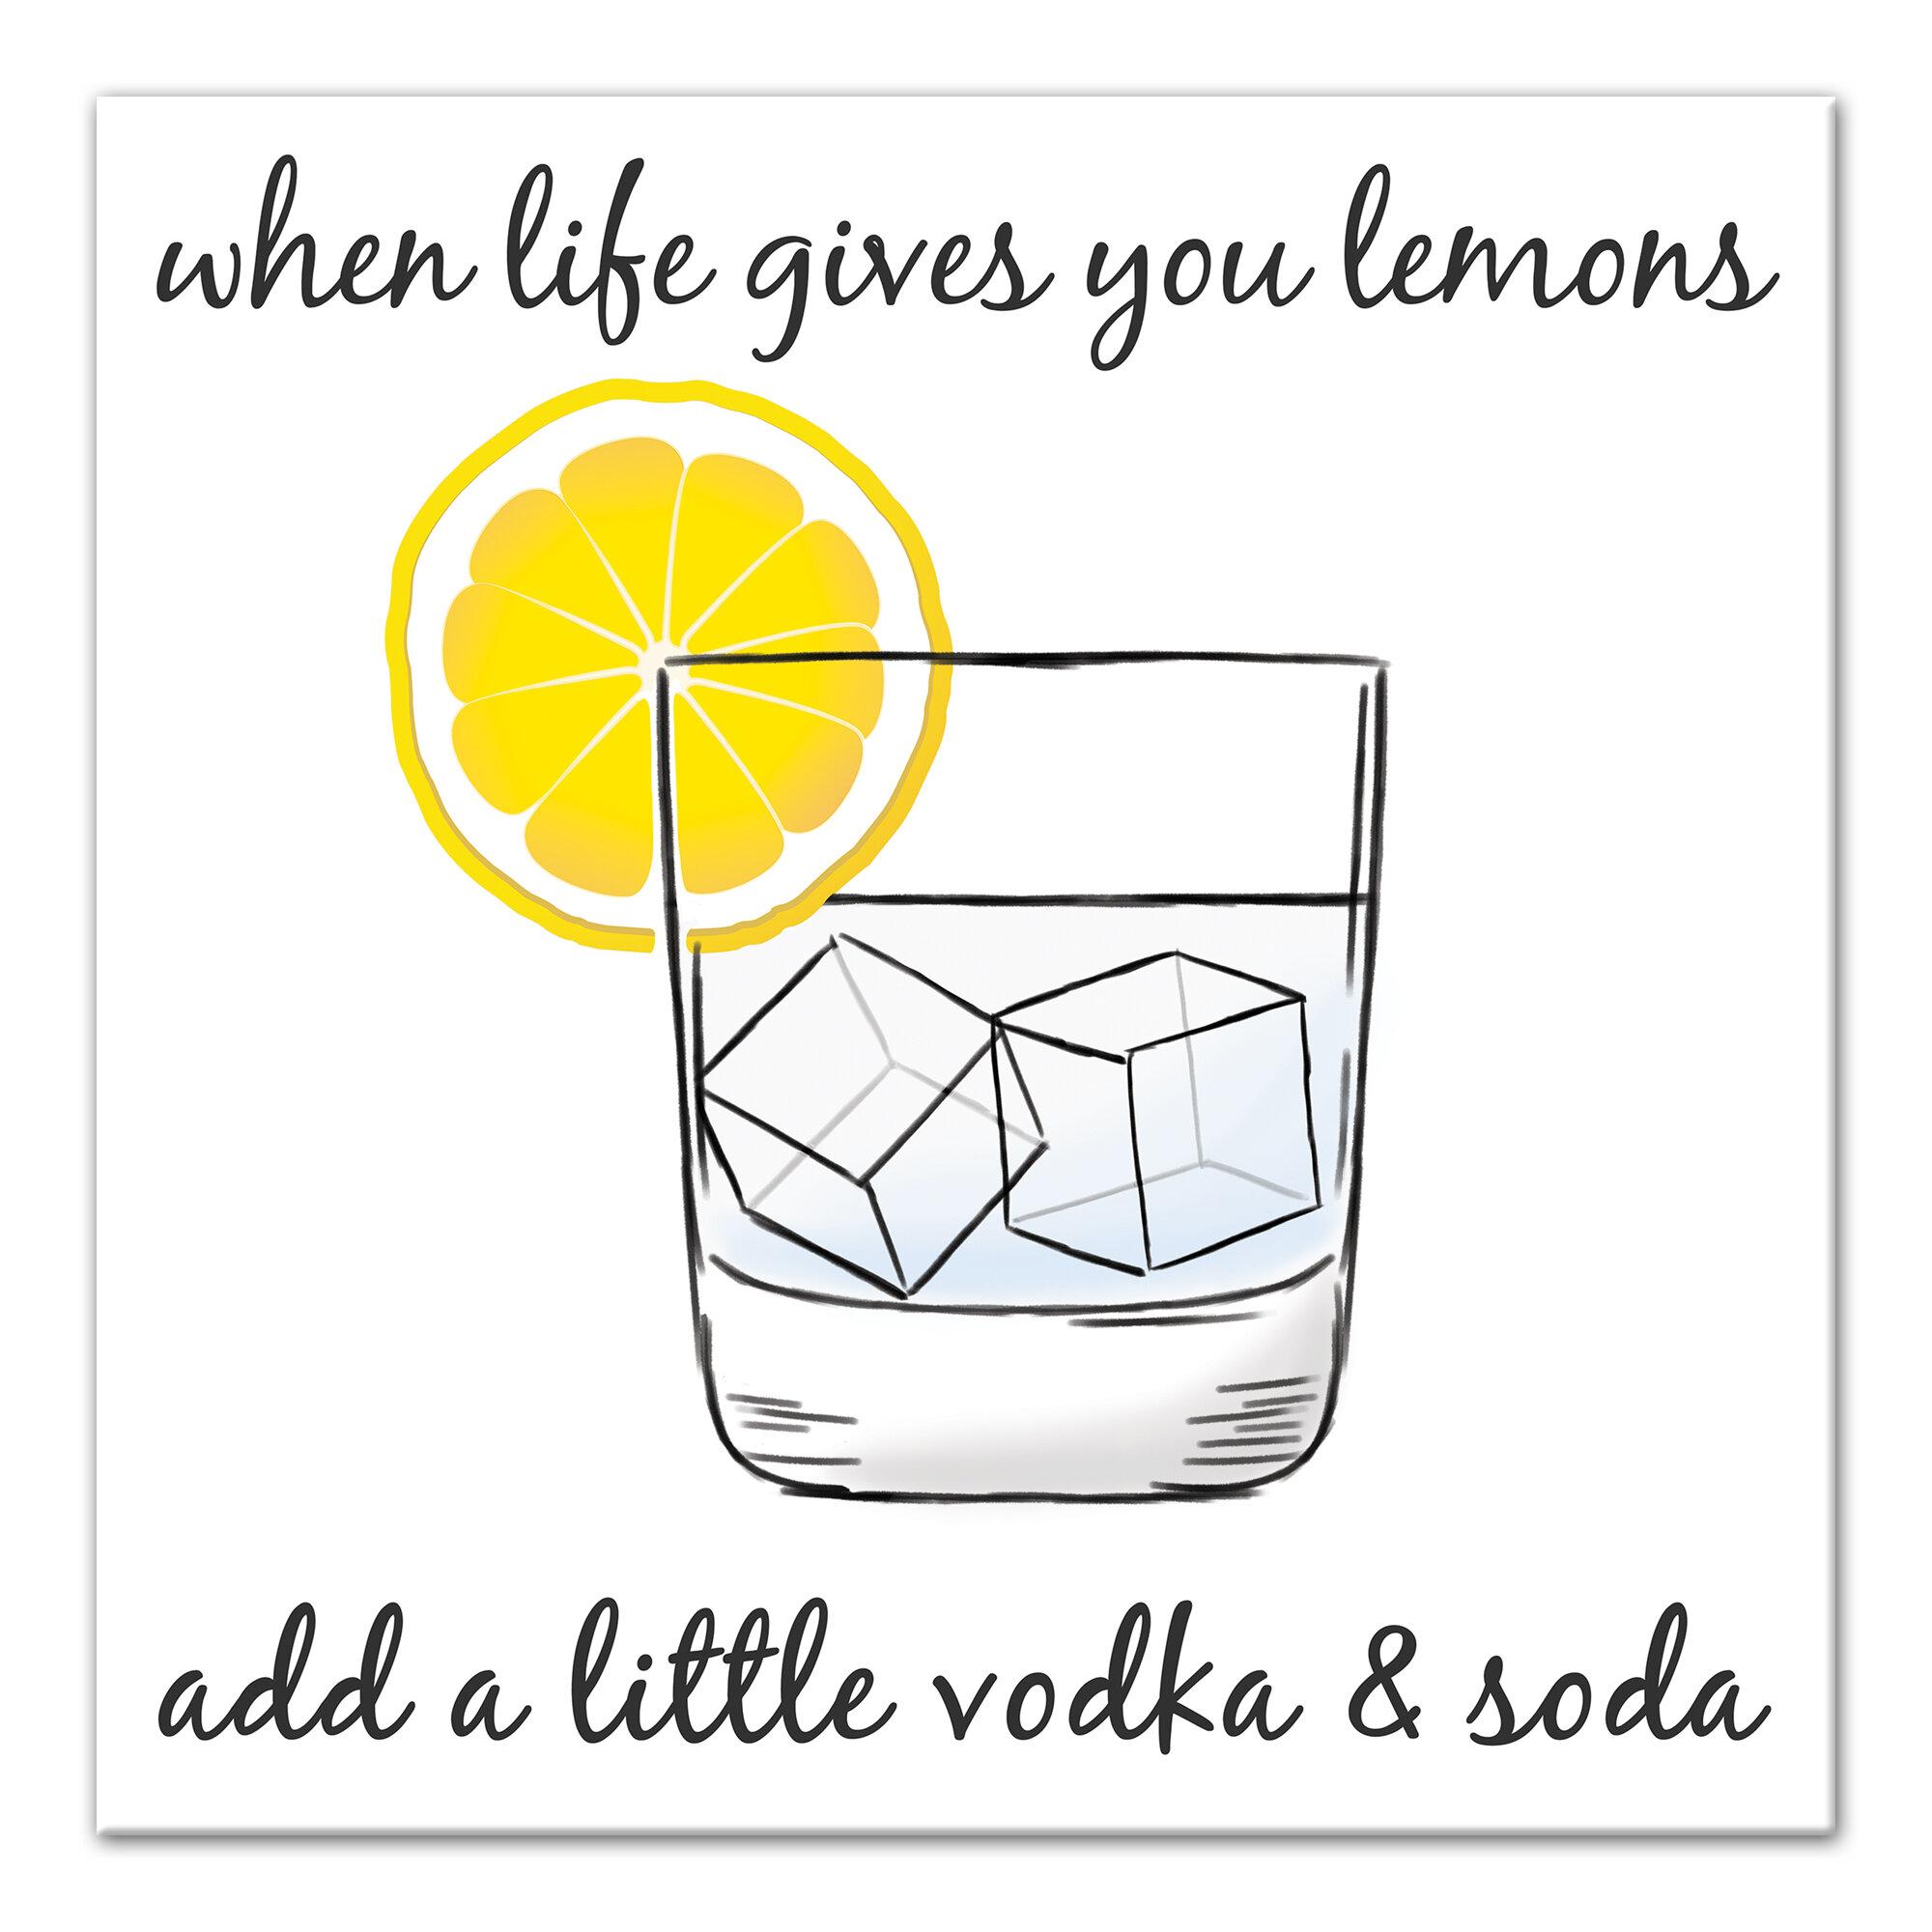 Bartesian - When life hands you lemons, add vodka. Modeled after